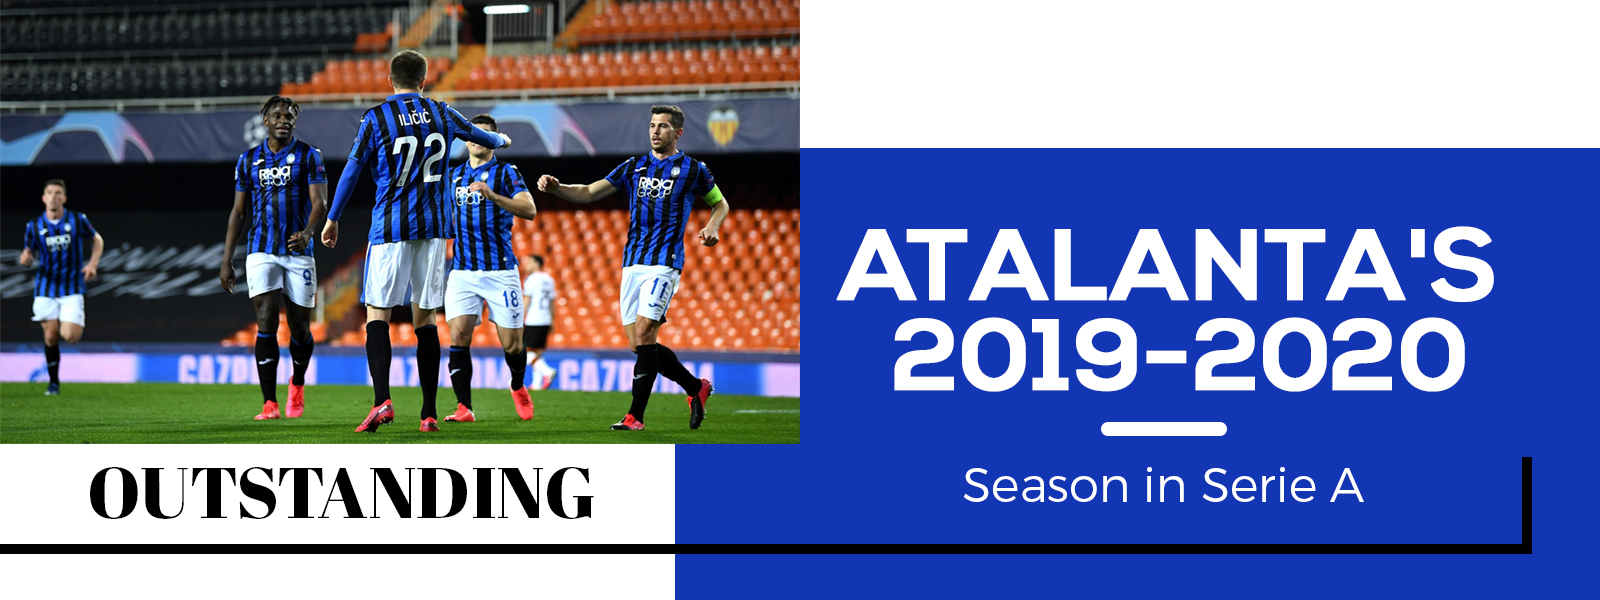 Outstanding Atalanta's 2019-2020 Season In Serie A